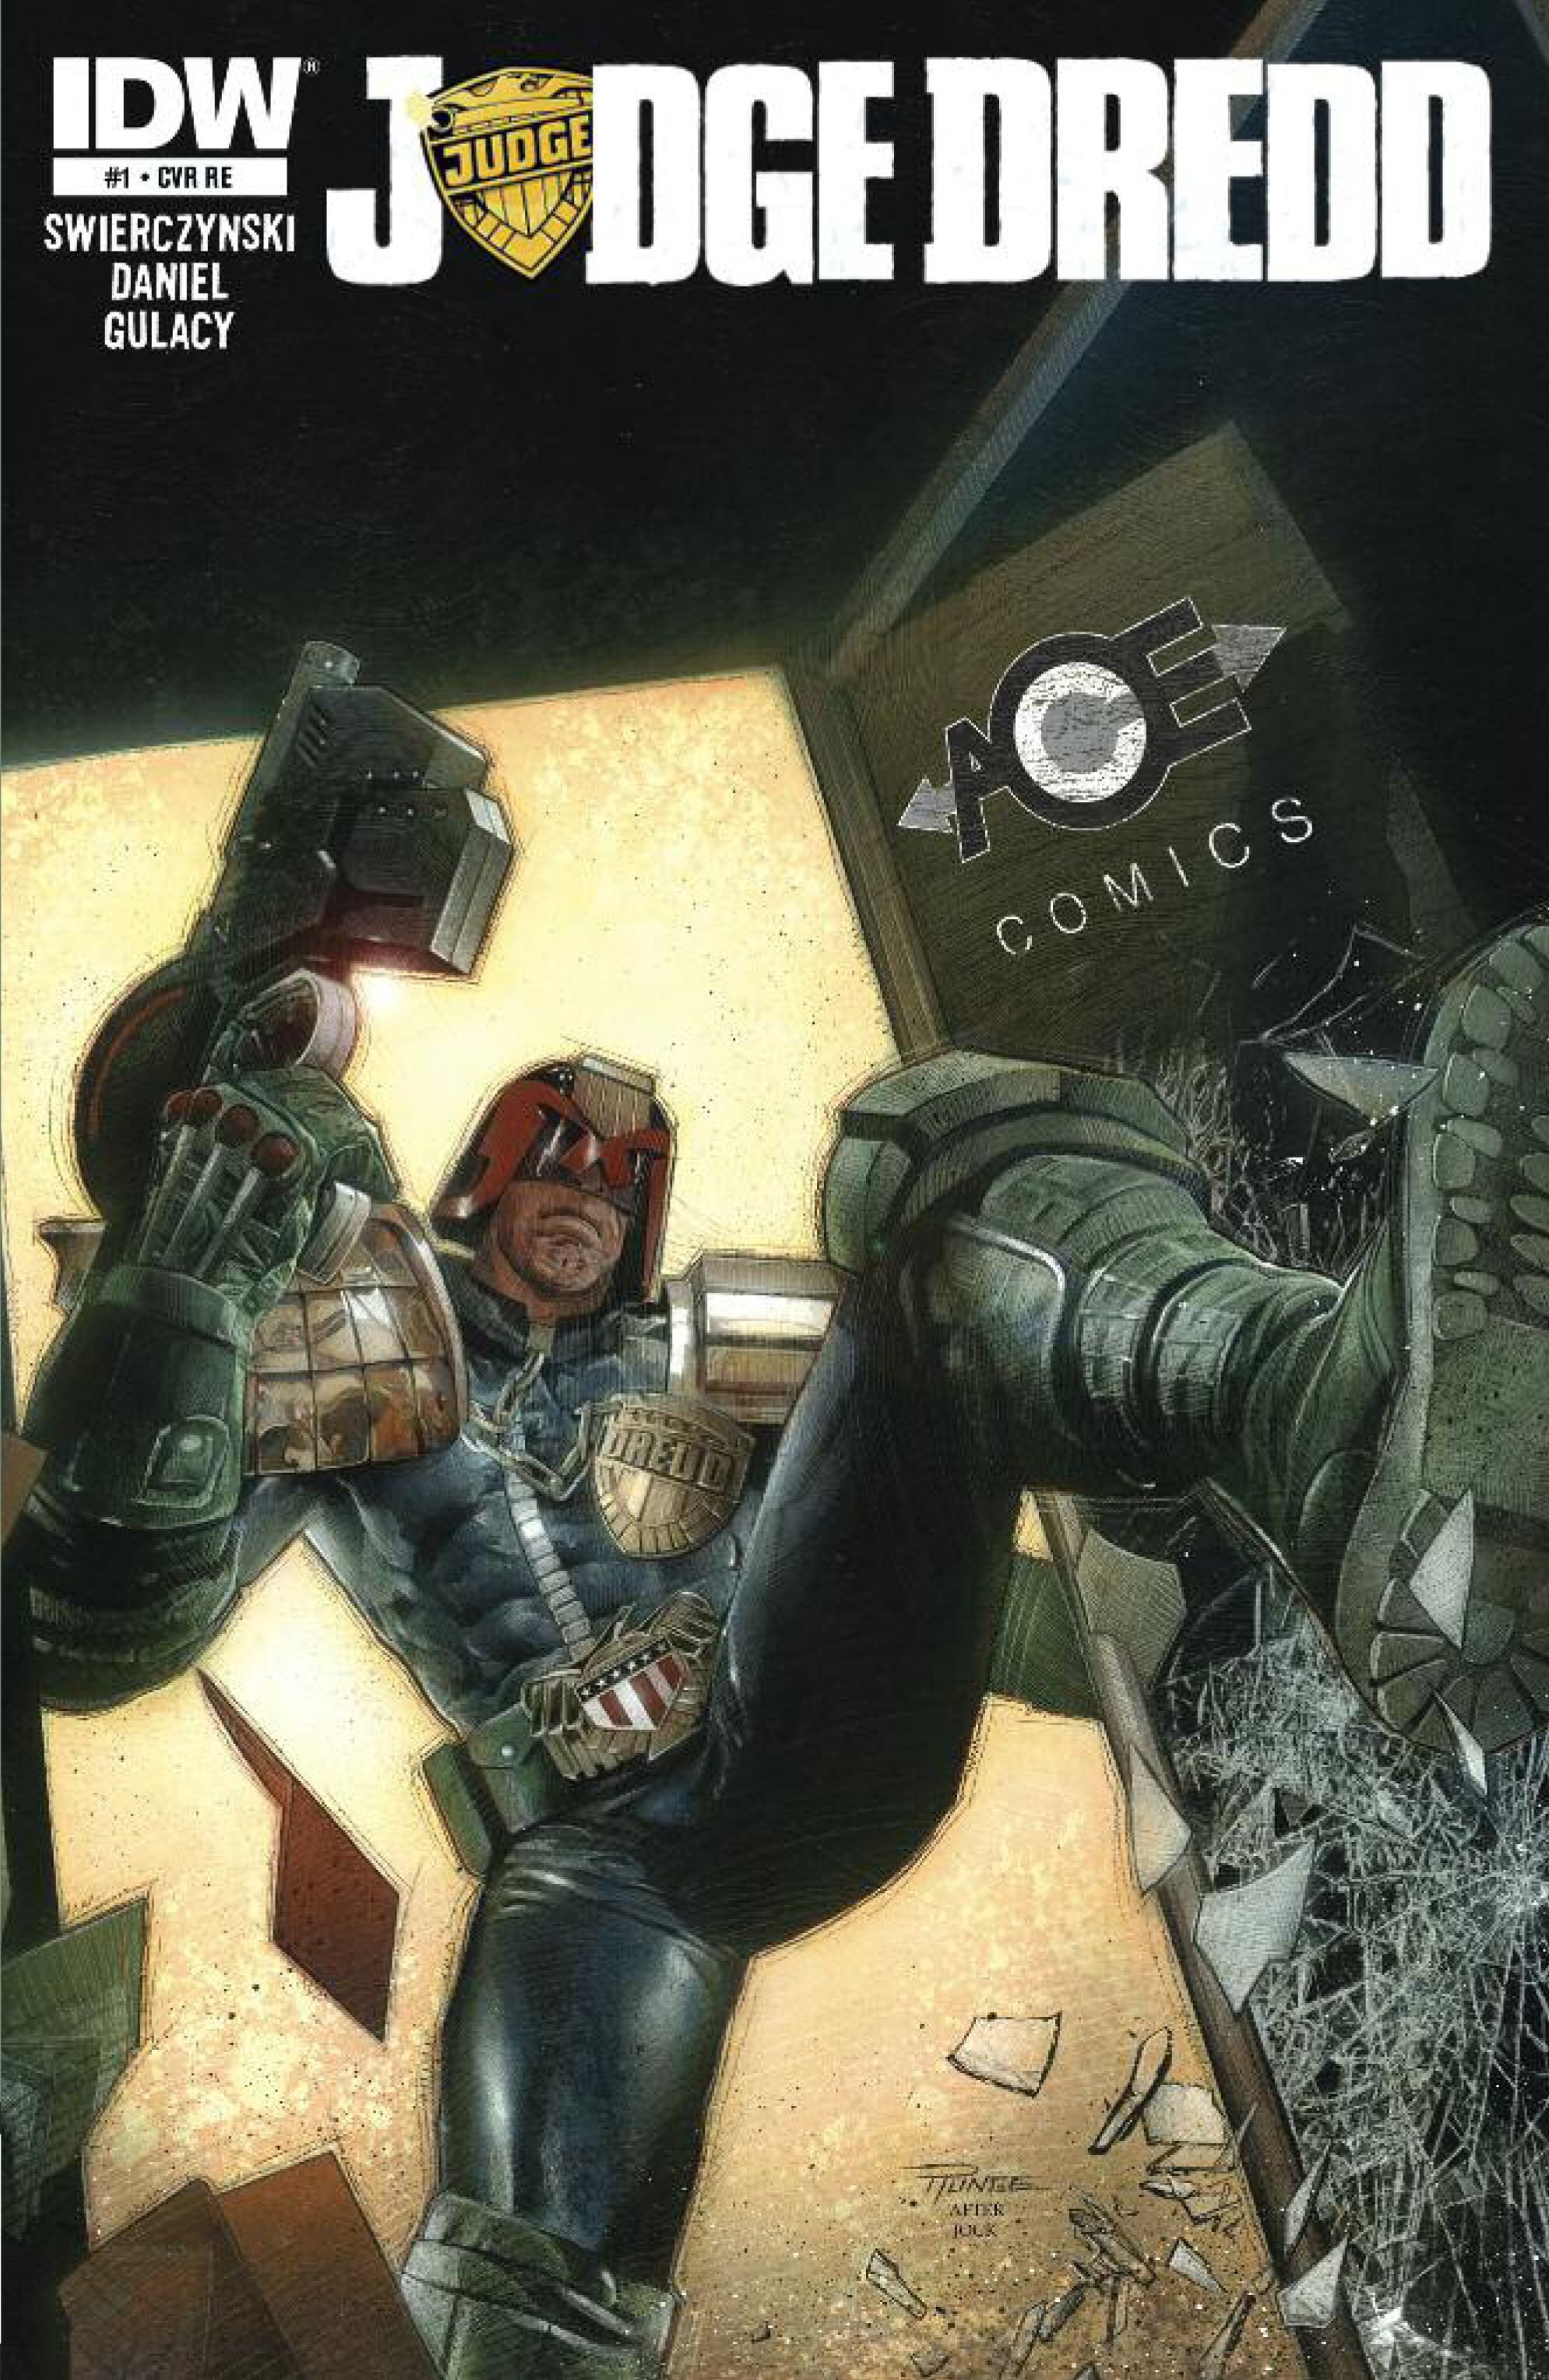 Judge Dredd #1 - ACE Comics Cover